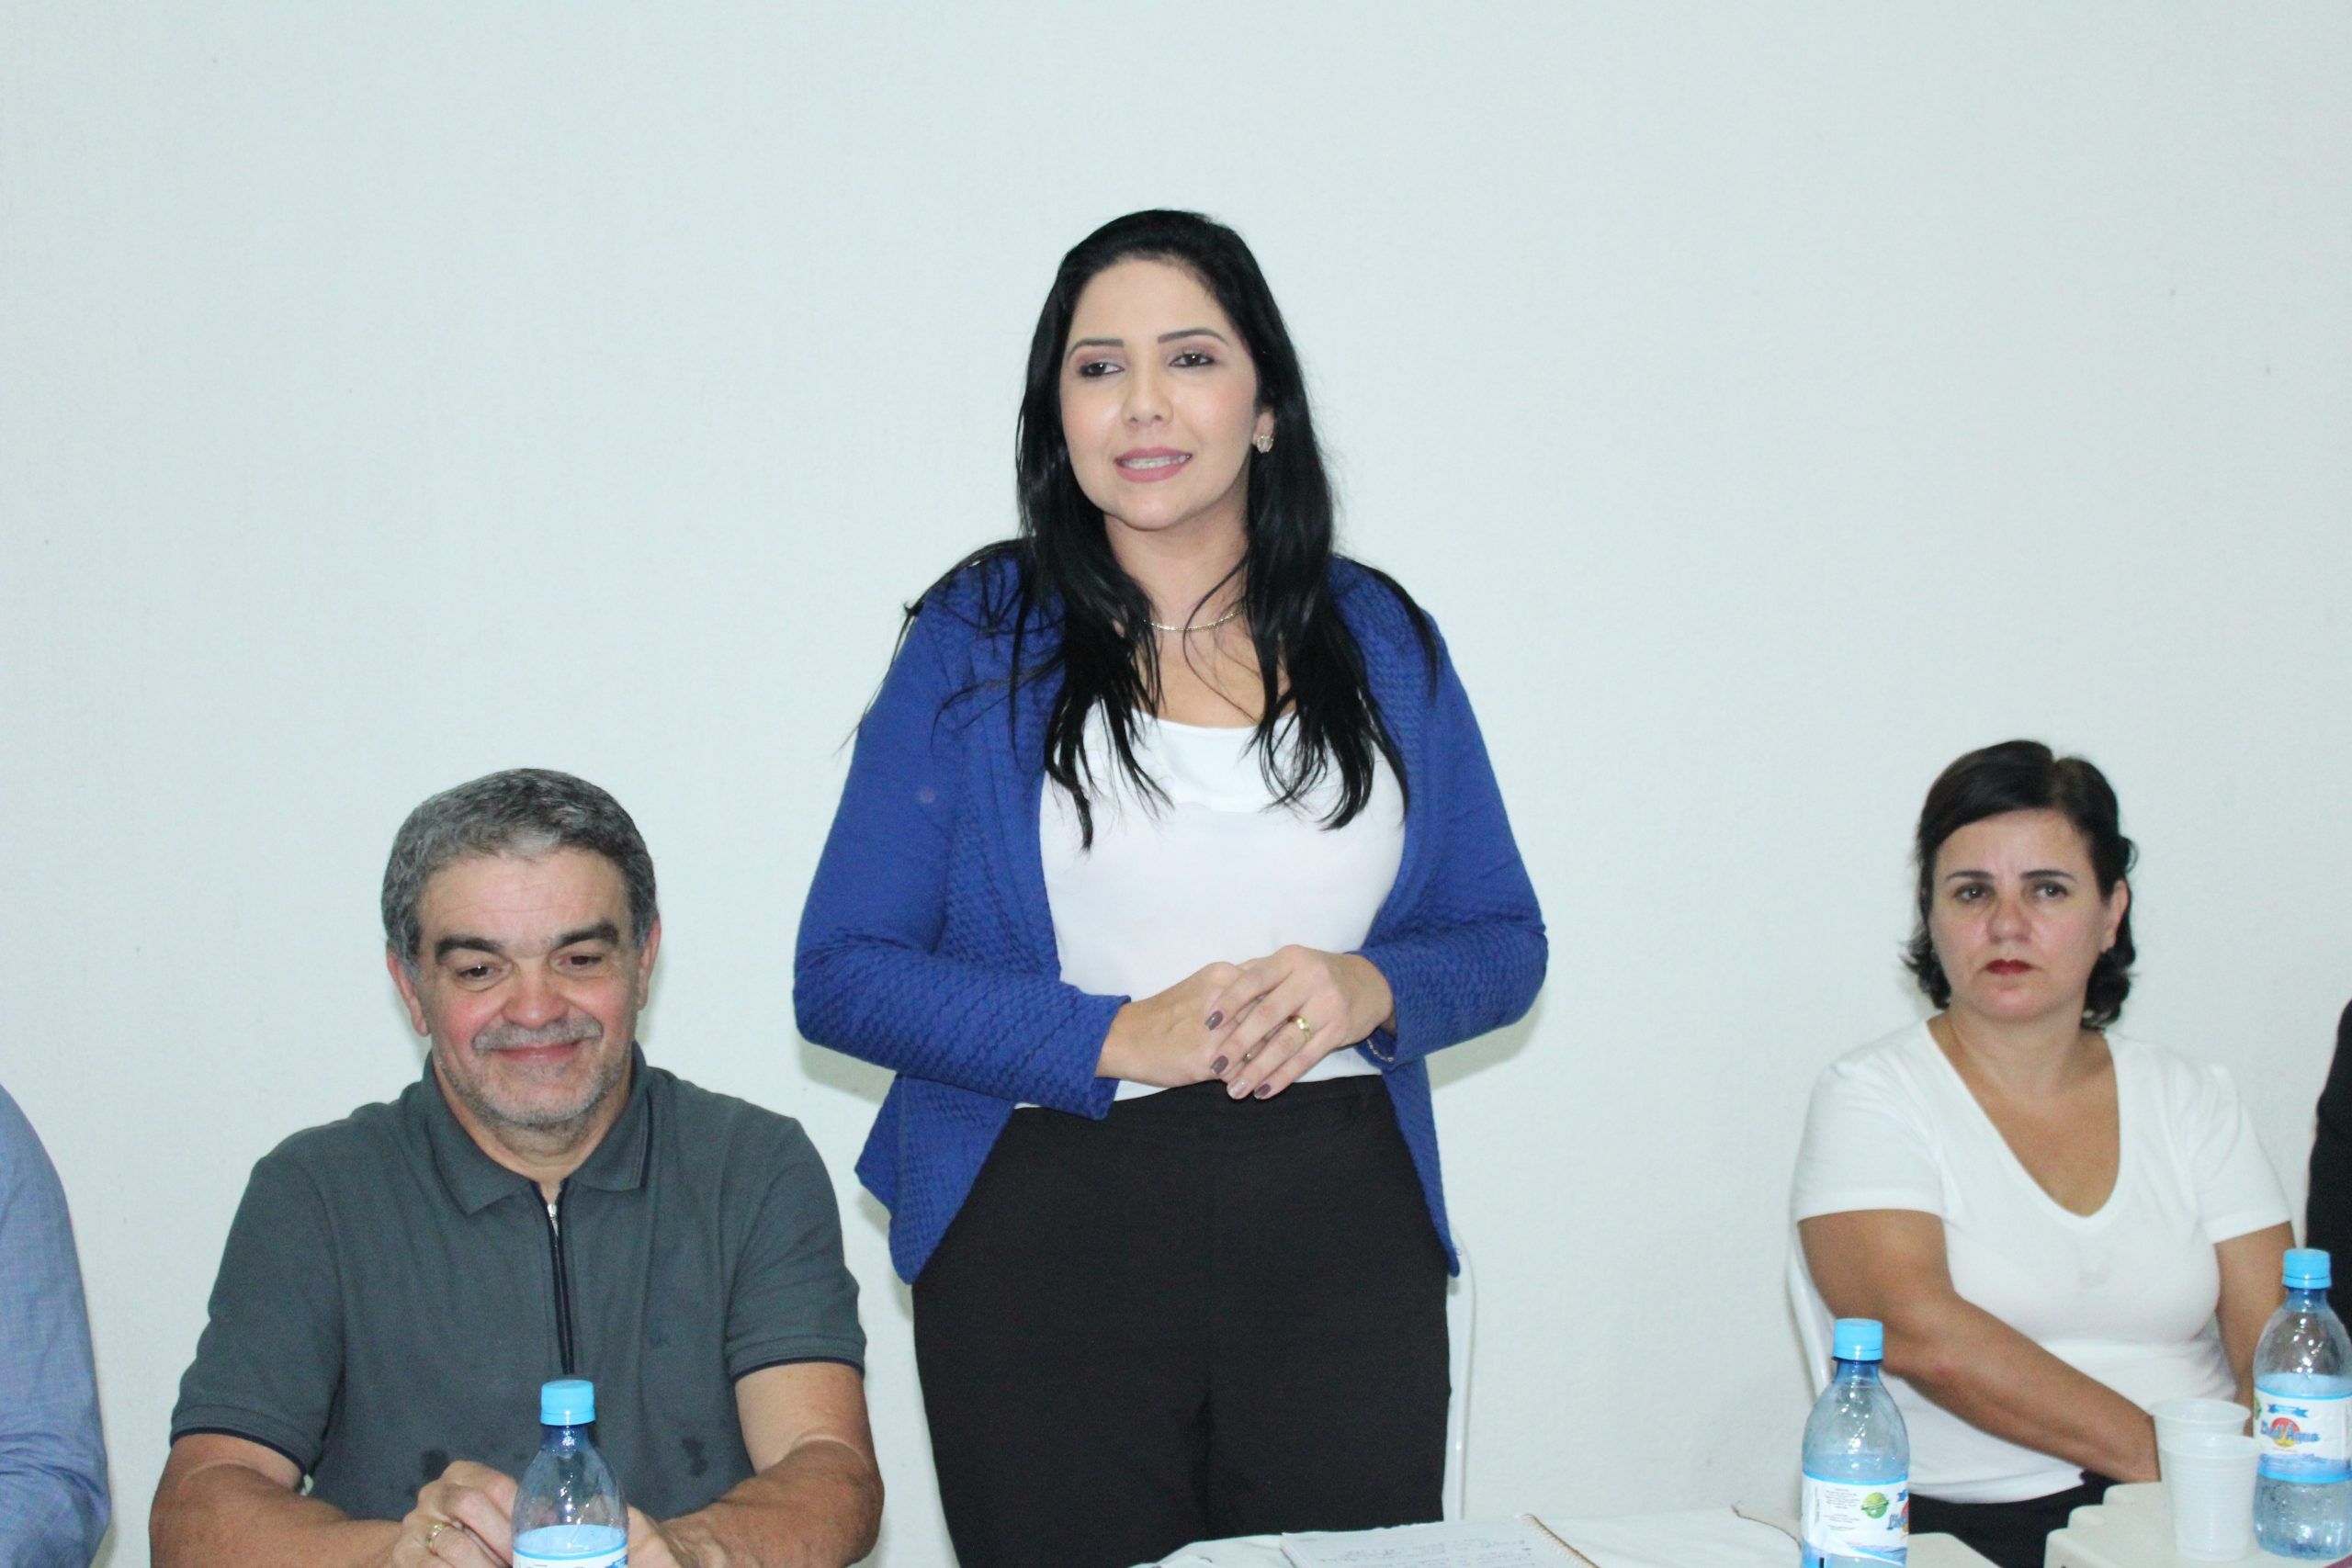 Progressistas reúne lideranças para anúncio da pré-candidatura de Cristiane Lopes à prefeitura de Porto Velho - eleicoes - progressistas rondonia